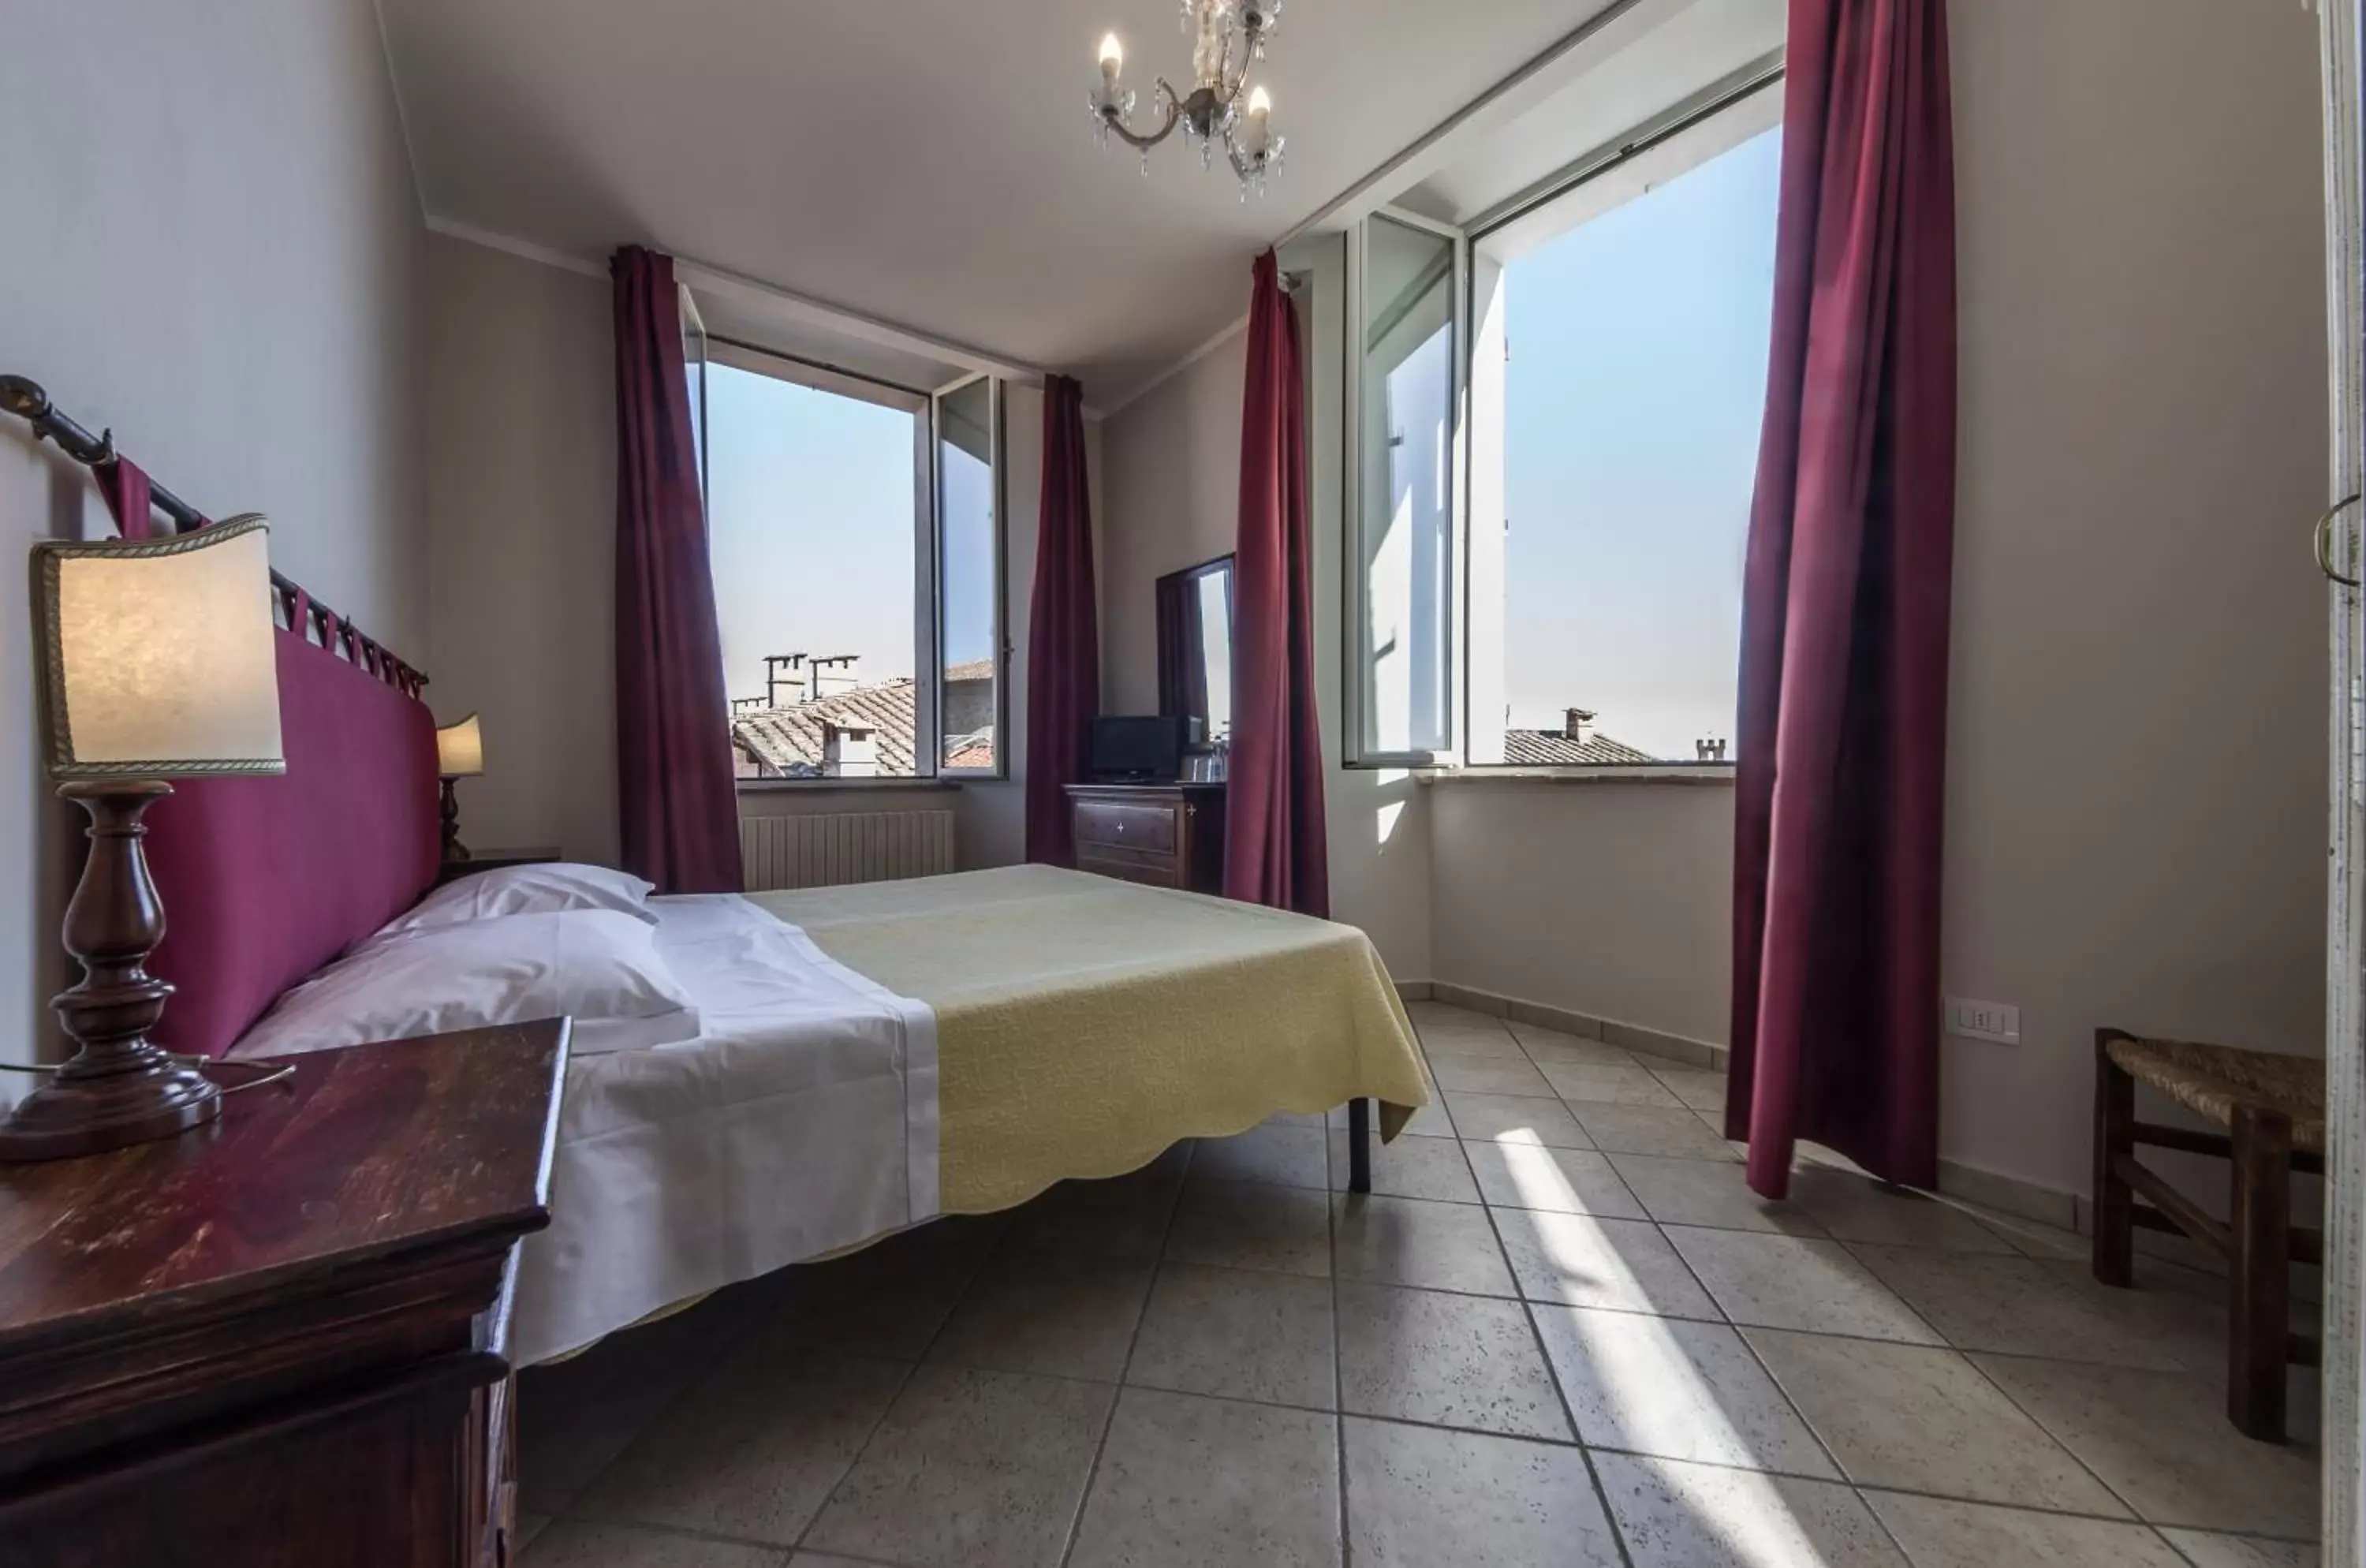 Bedroom in I Terzi Di Siena - Rooms Only